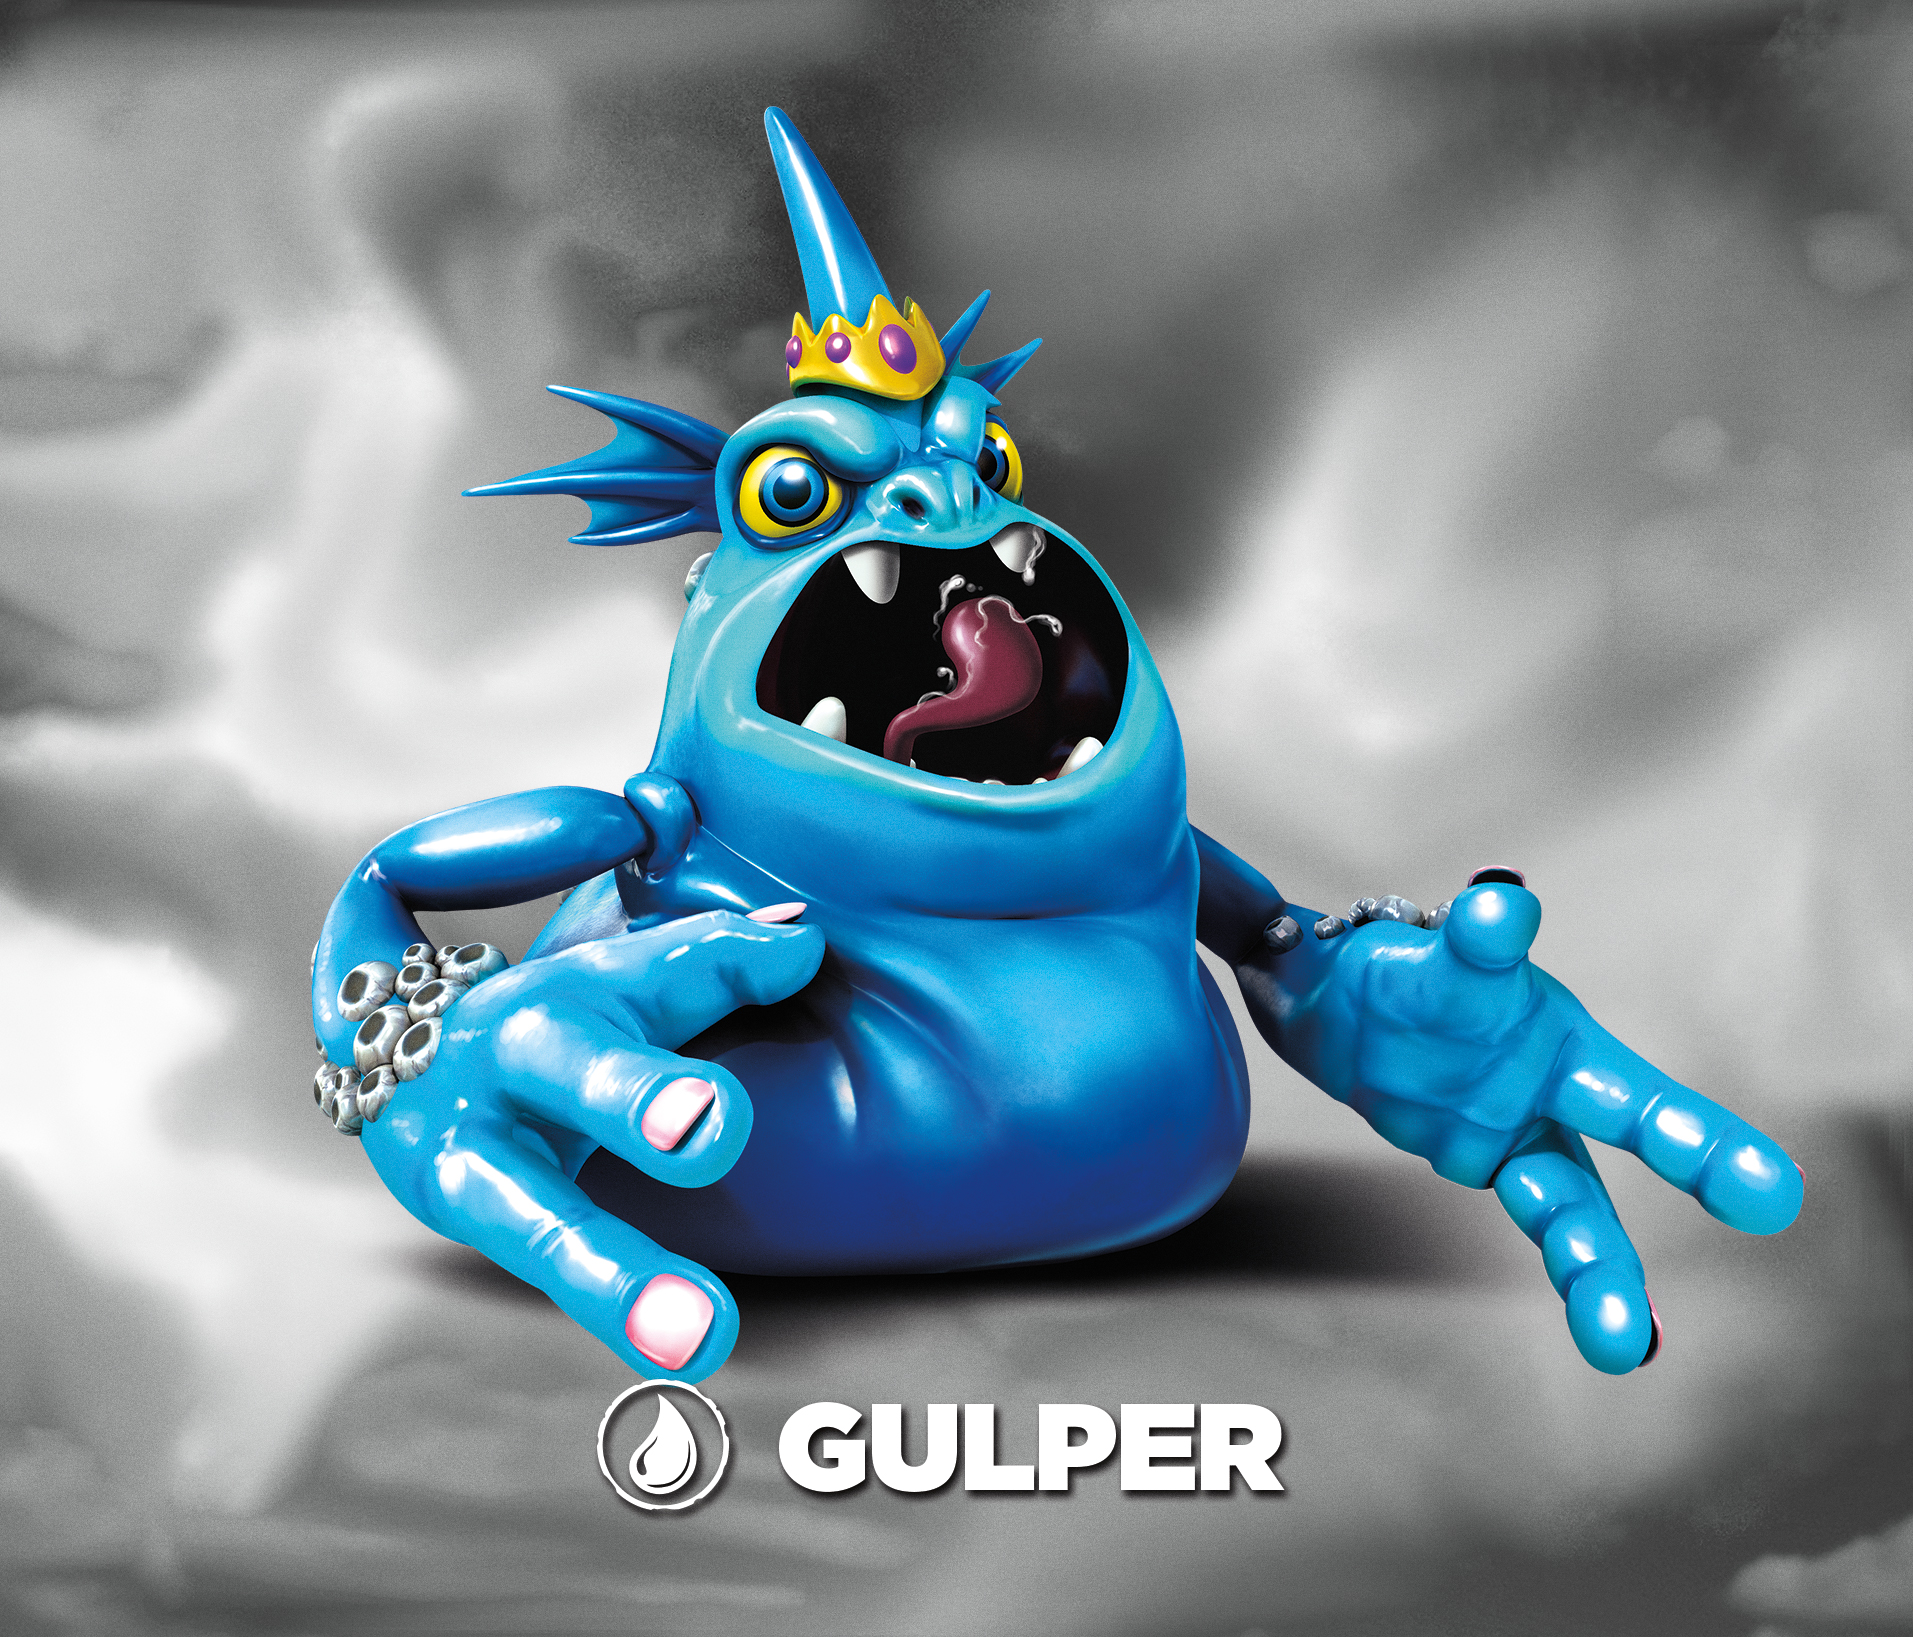 The Gulper